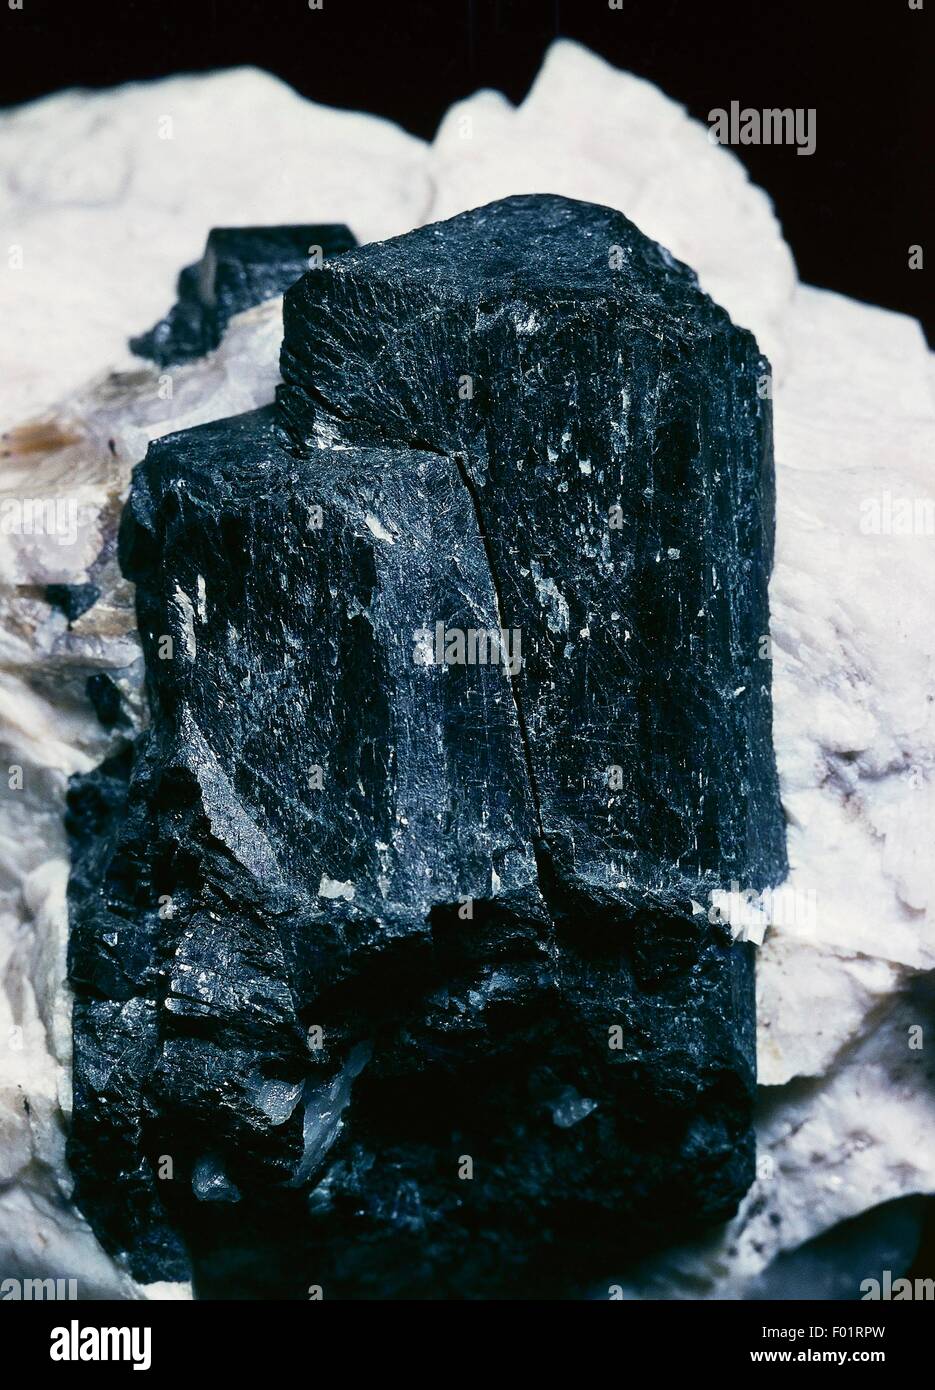 La tourmaline noire, silicate, dans pegmatite, roches intrusives, d'Olgiasca, Lombardie, Italie. Banque D'Images